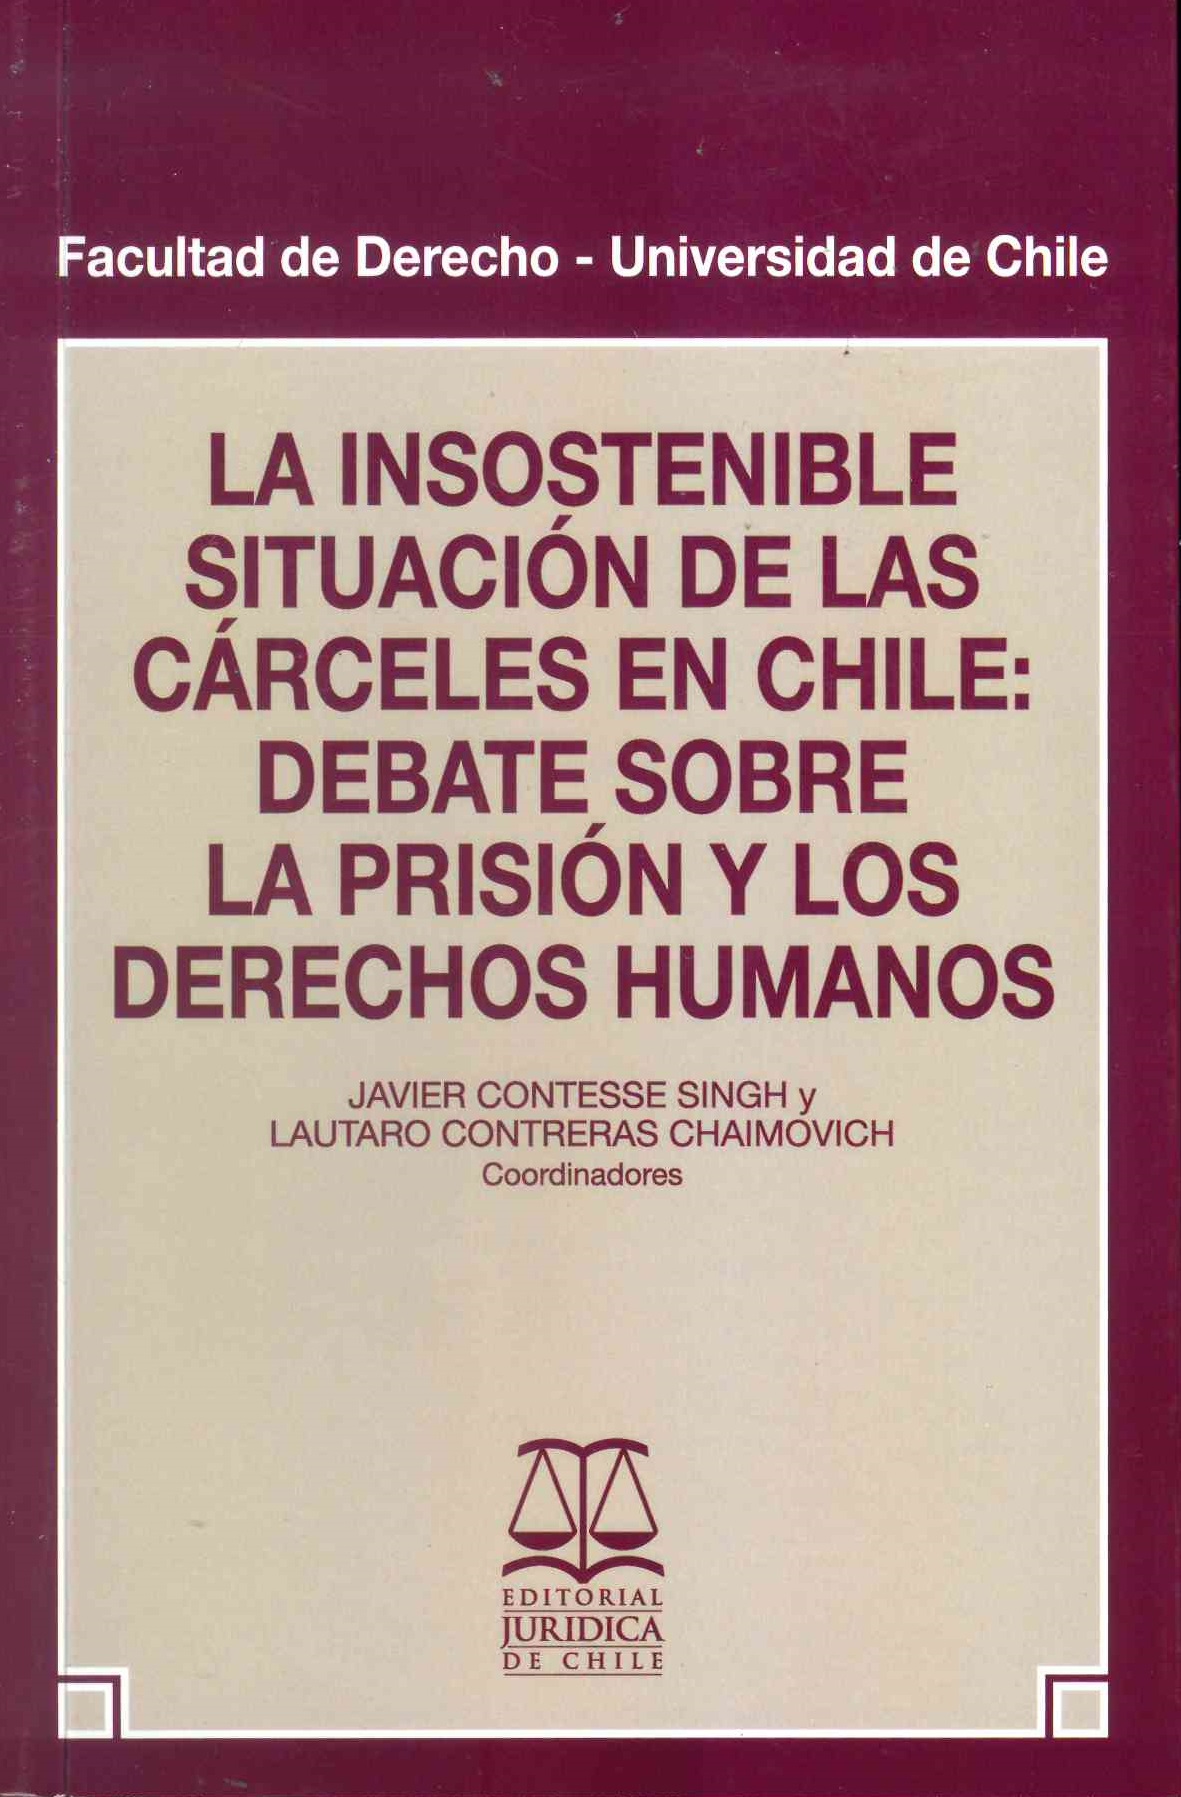 La insostenible situación de las cárceles en Chile: Debate sobre la prisión y los derechos humanos